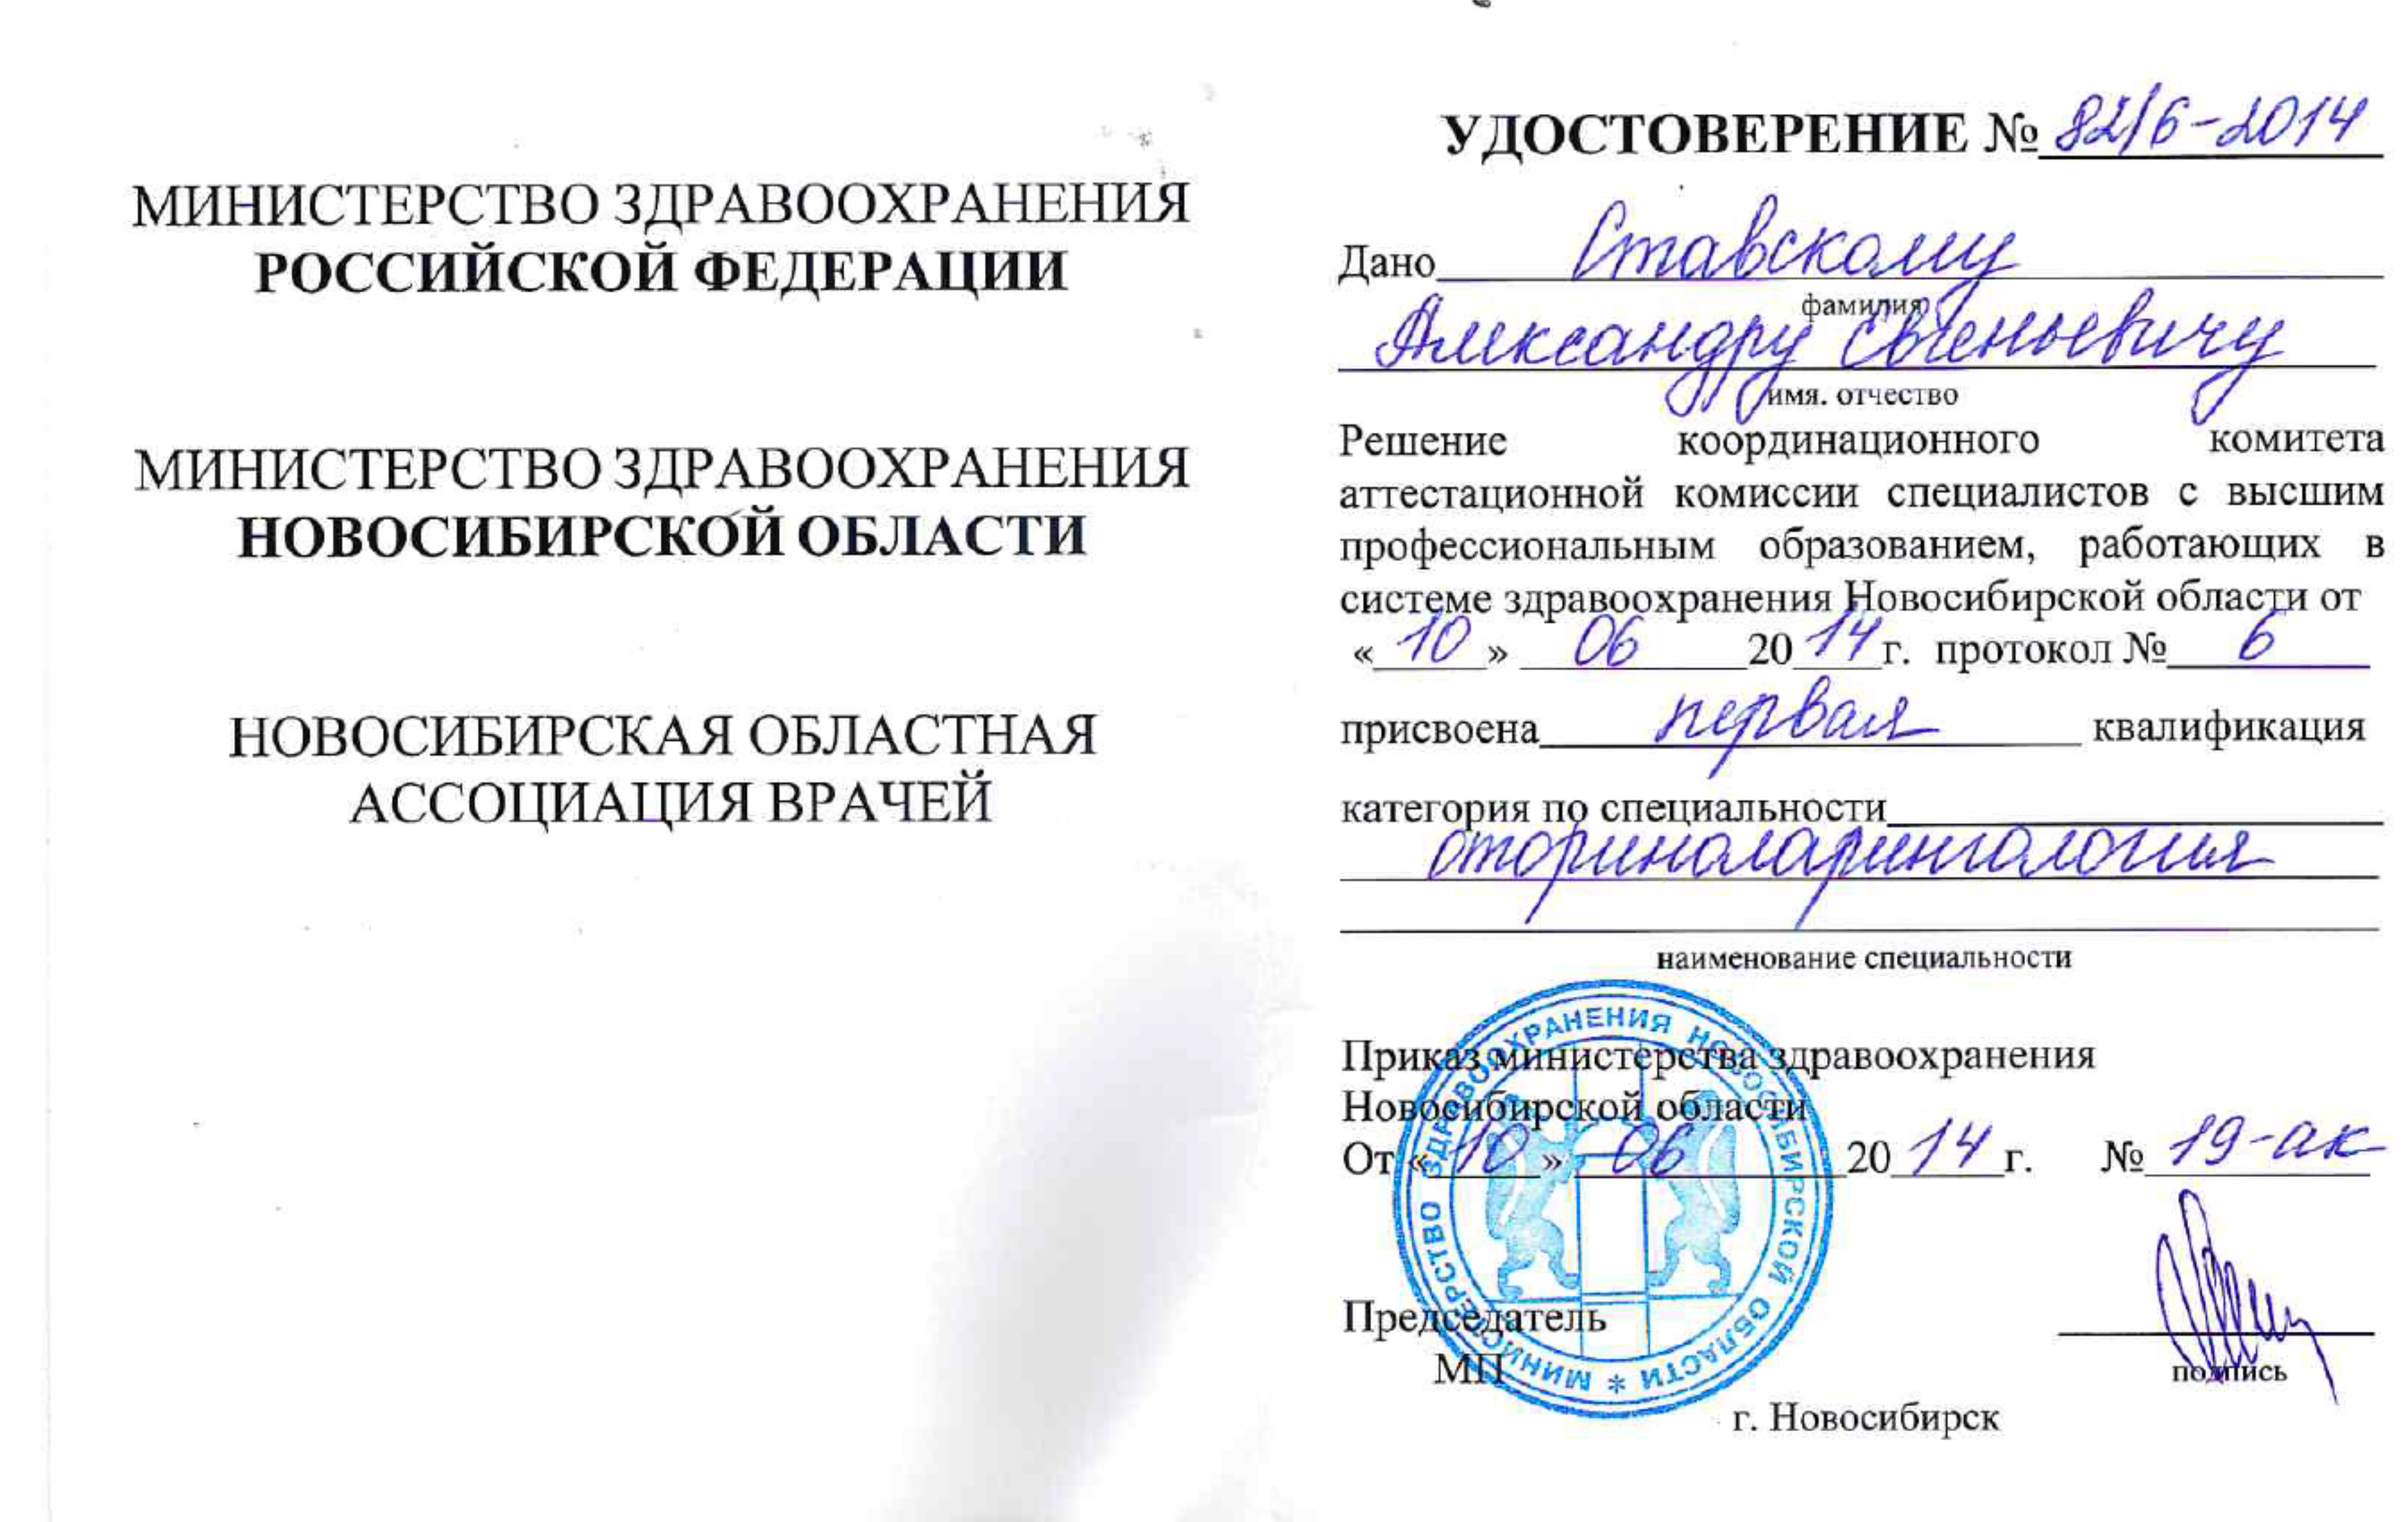 Удостоверение о присвоении 1 квалификации "Оториноларингология". 2014 г.